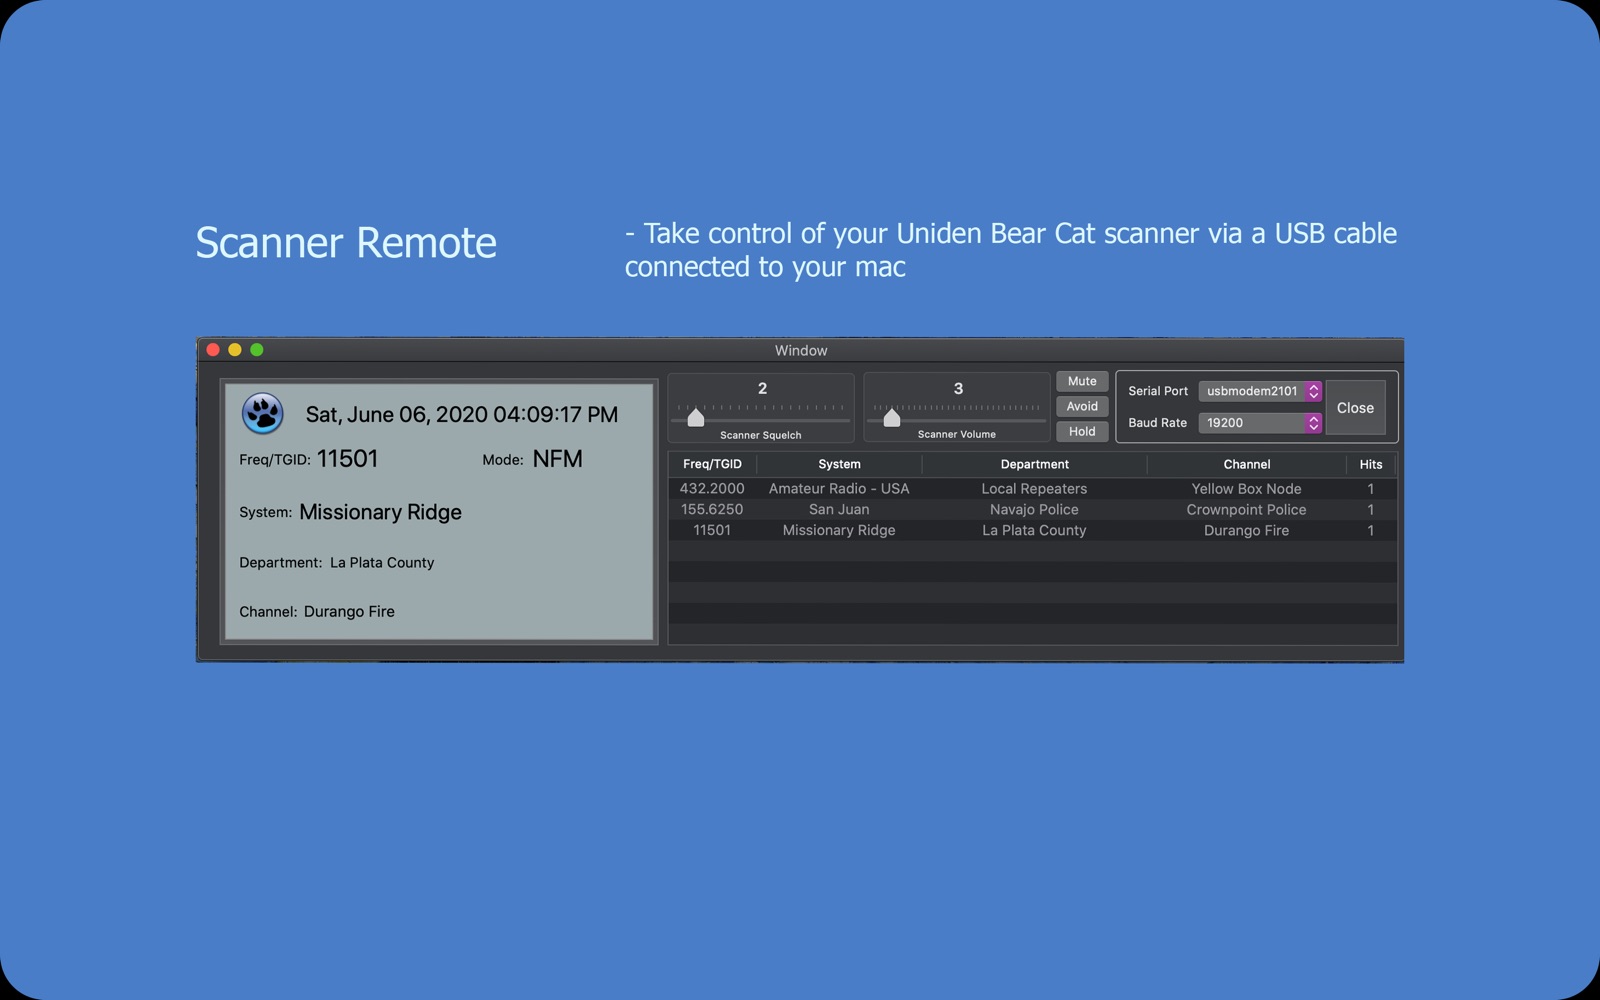 Scanner Remote 1.1 : Main Window